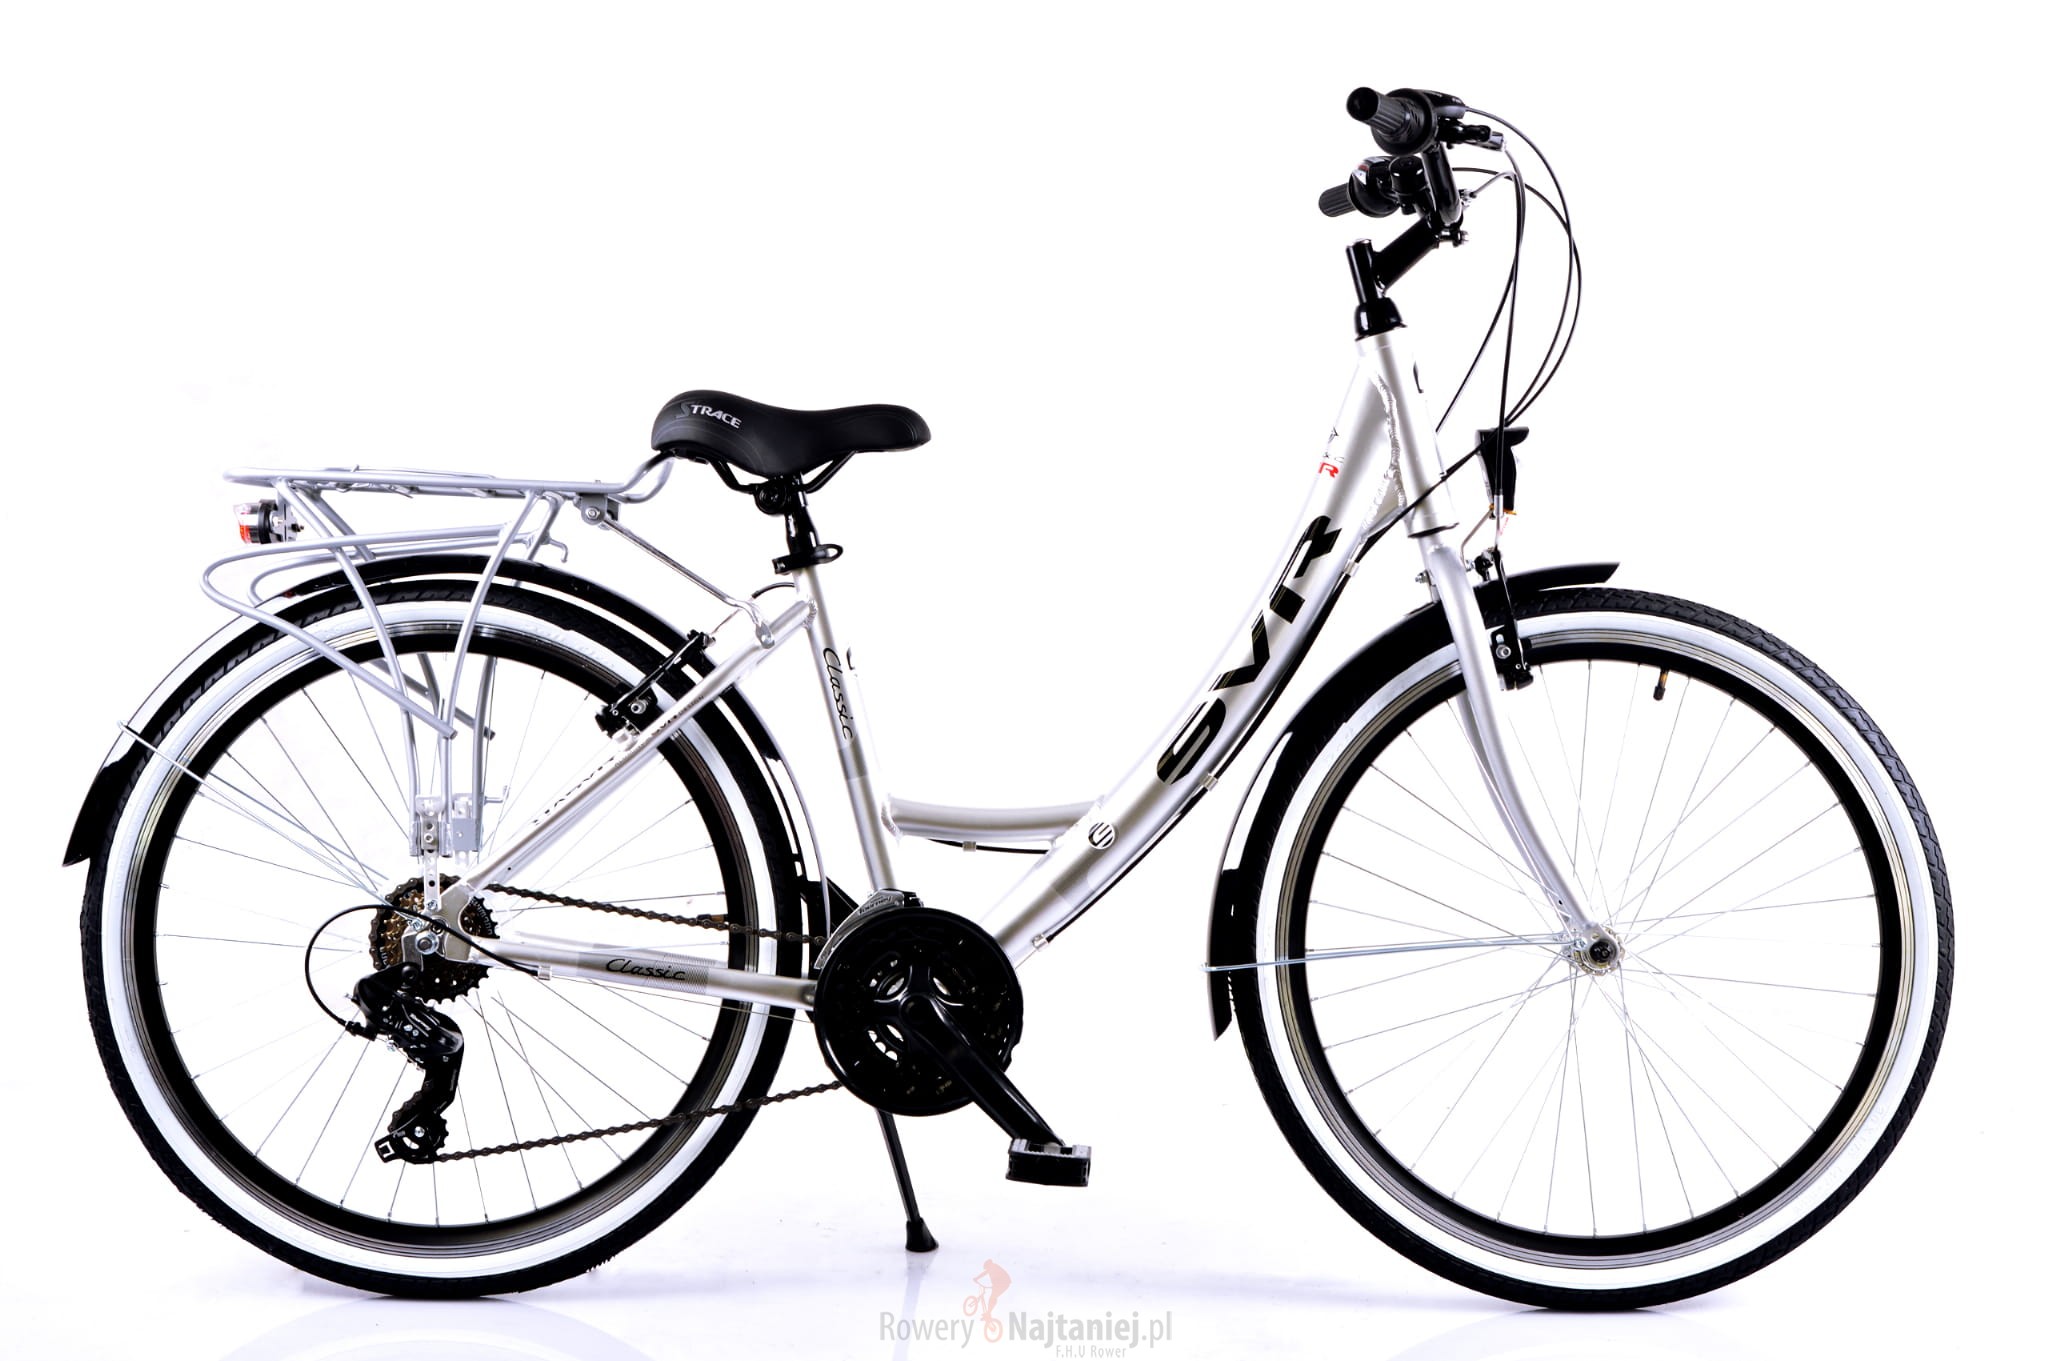 Városi-city kerékpár SVR 26